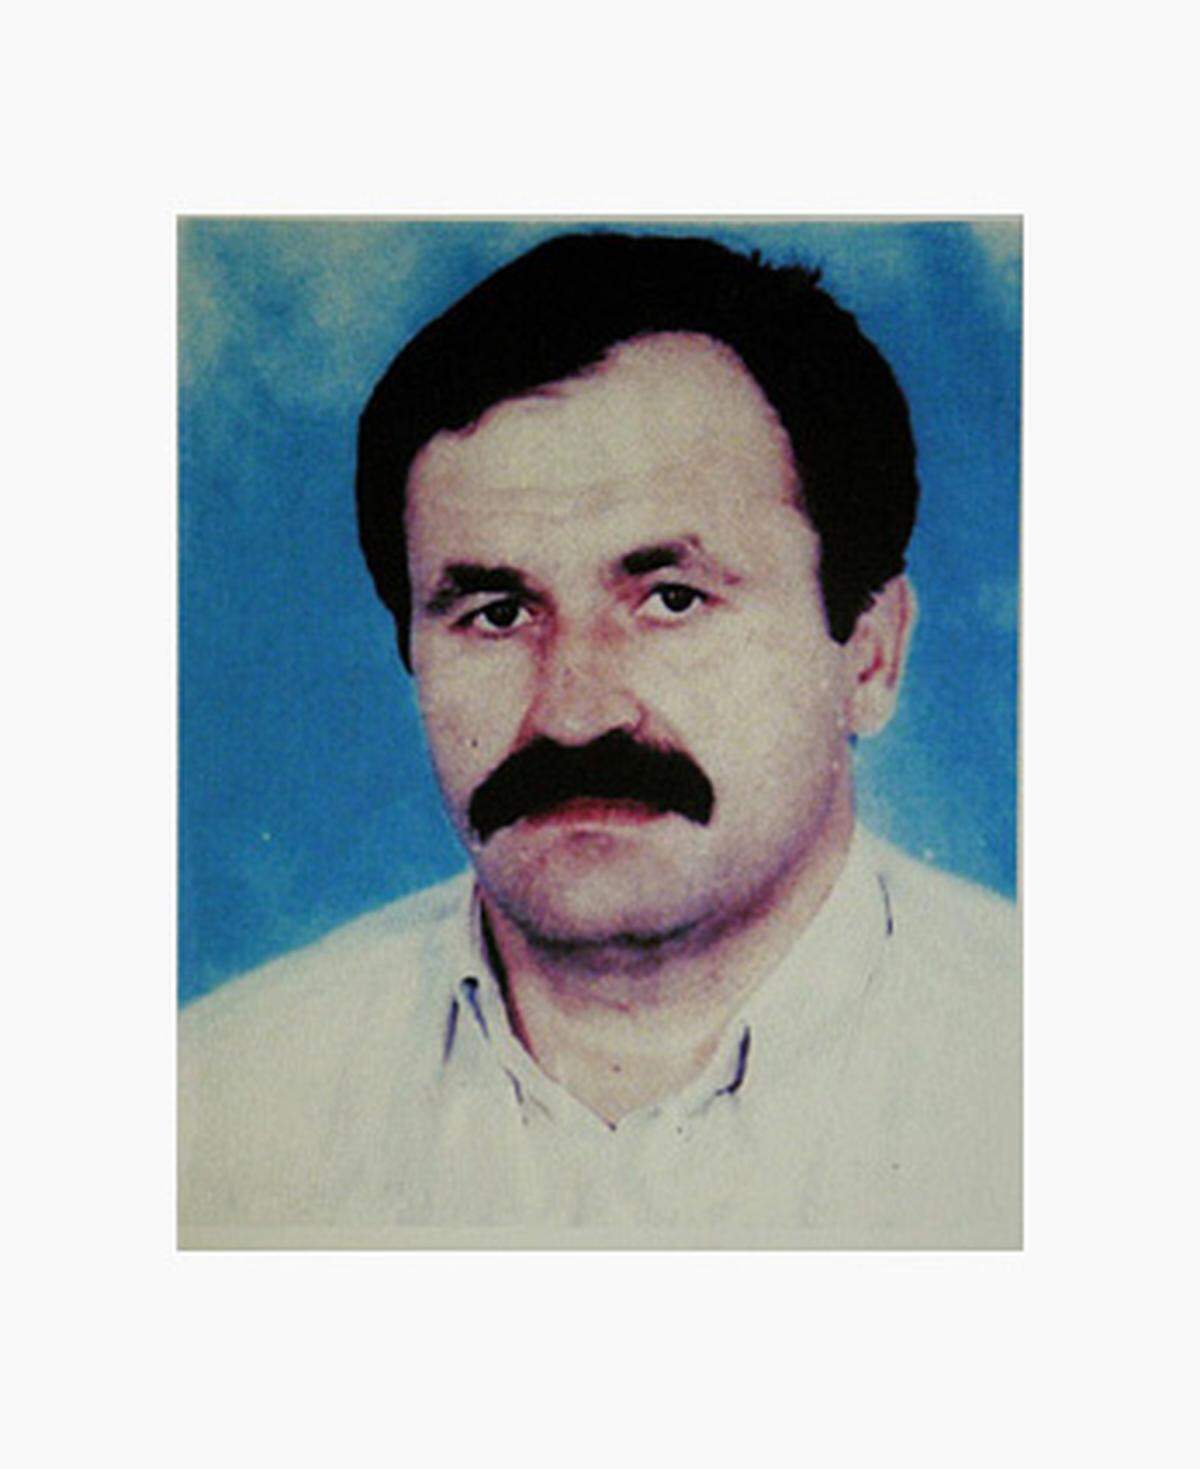 Enver Simsek: Auf den 38 Jahre alte Blumenhändler wird am 9. September 2000 in Nürnberg (Bayern) geschossen. Er stirbt später im Krankenhaus.